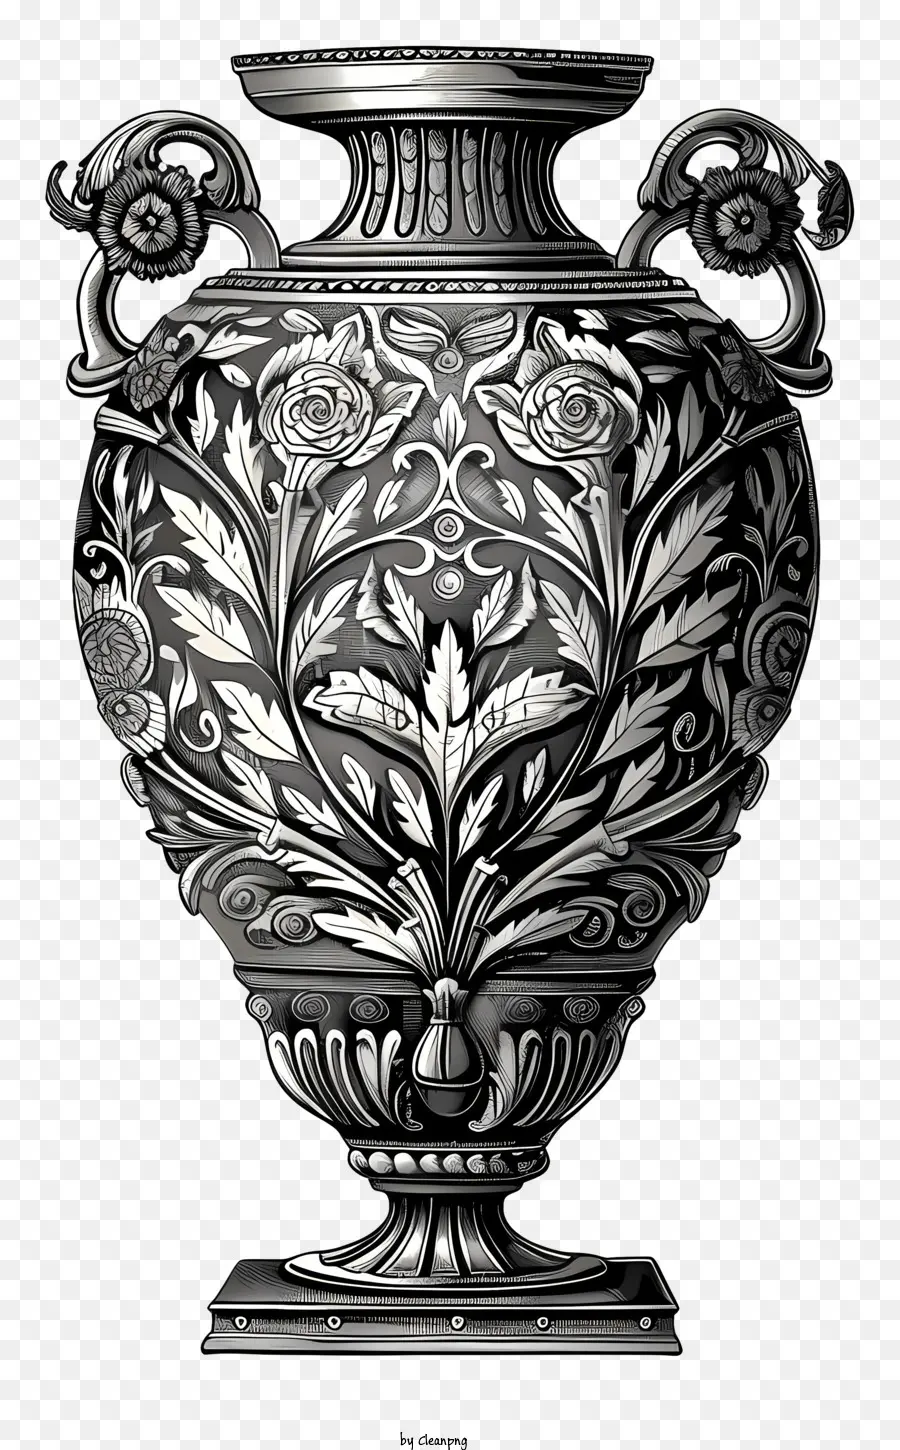 roman vase silver vase ornate design floral patterns intricate details